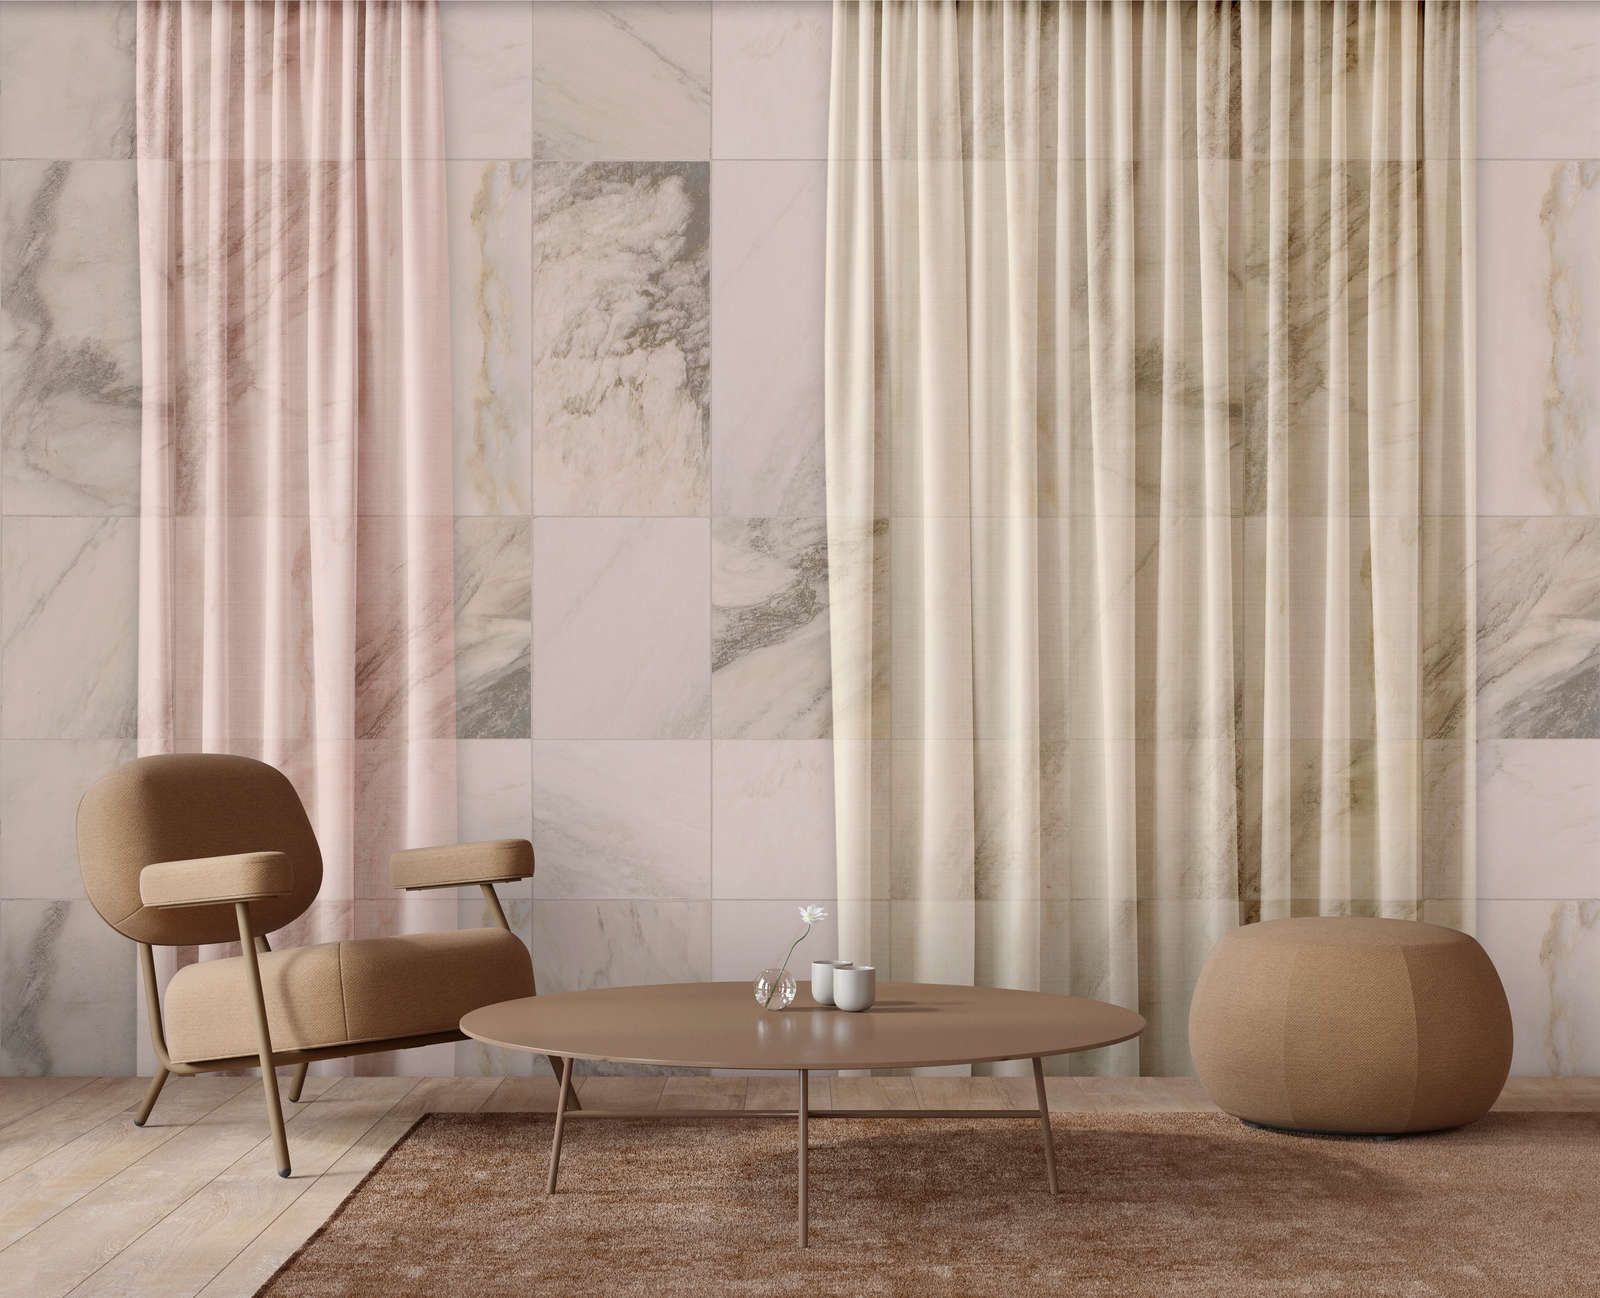             Digital behang »nova 3« - subtiel vallende gordijnen voor een beige marmeren muur - matte, gladde vliesstof
        